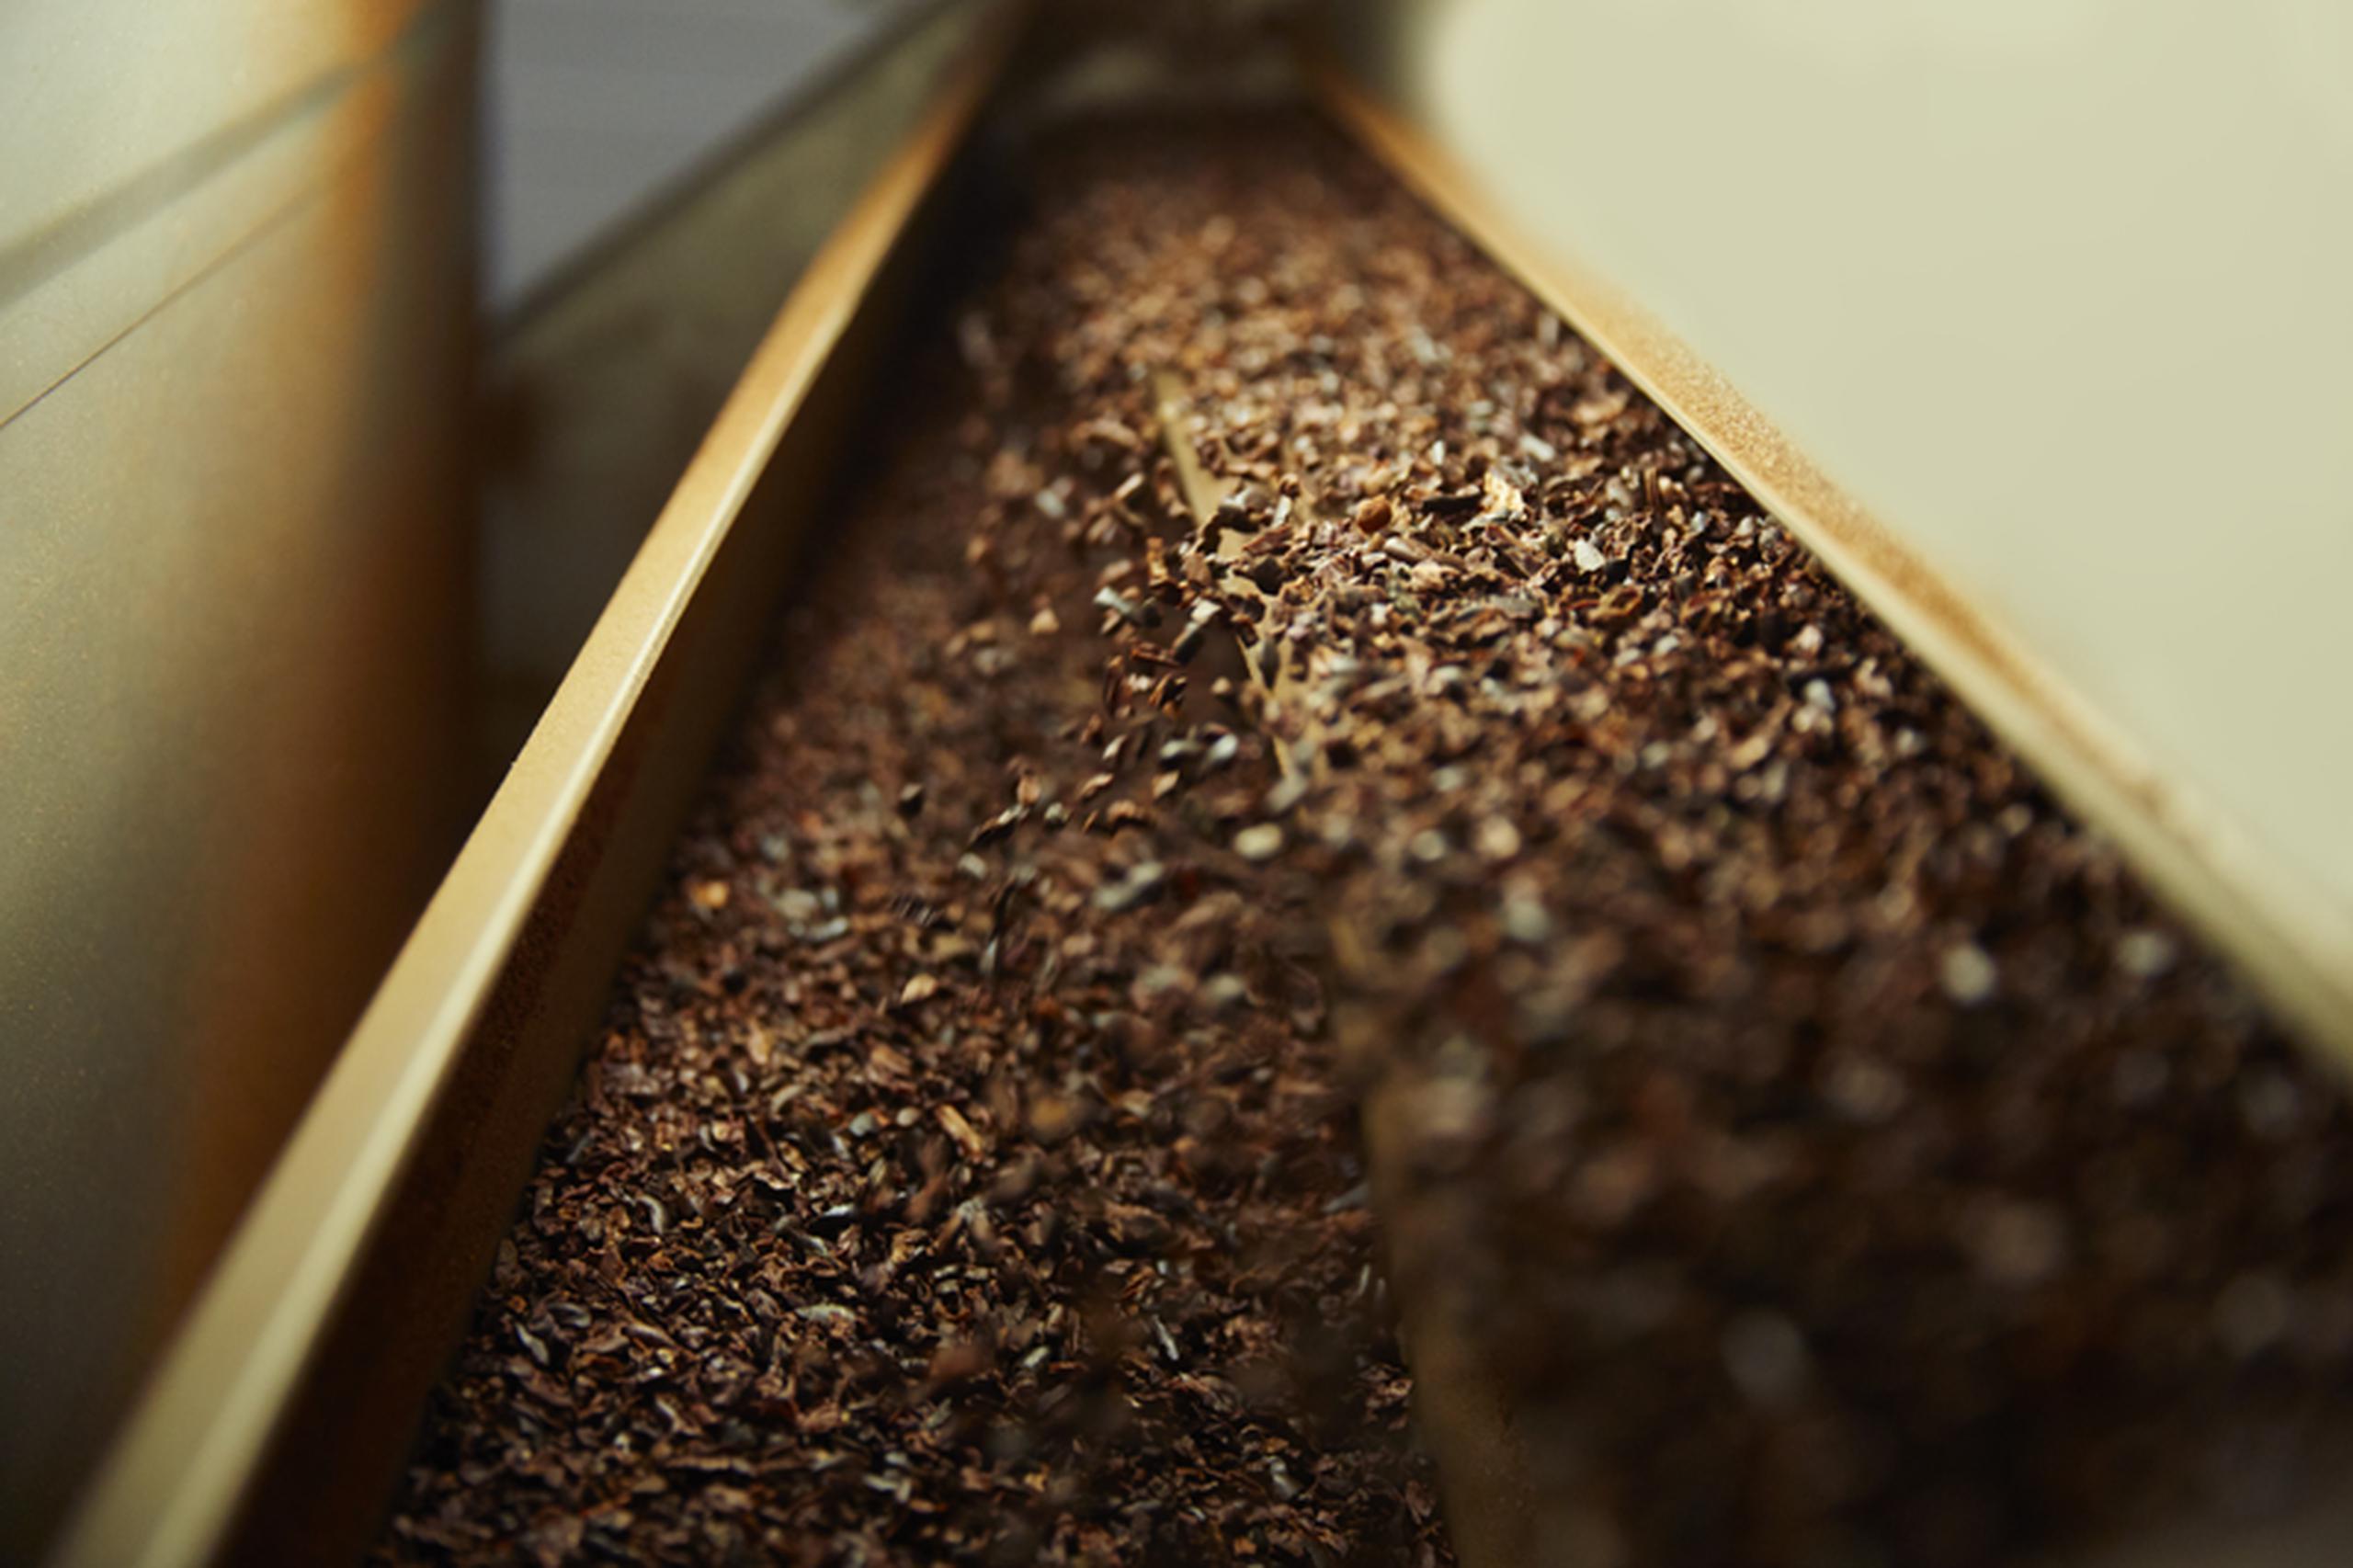 Los "nibs", pequeños trozos de granos de cacao triturados, son la base del chocolate.